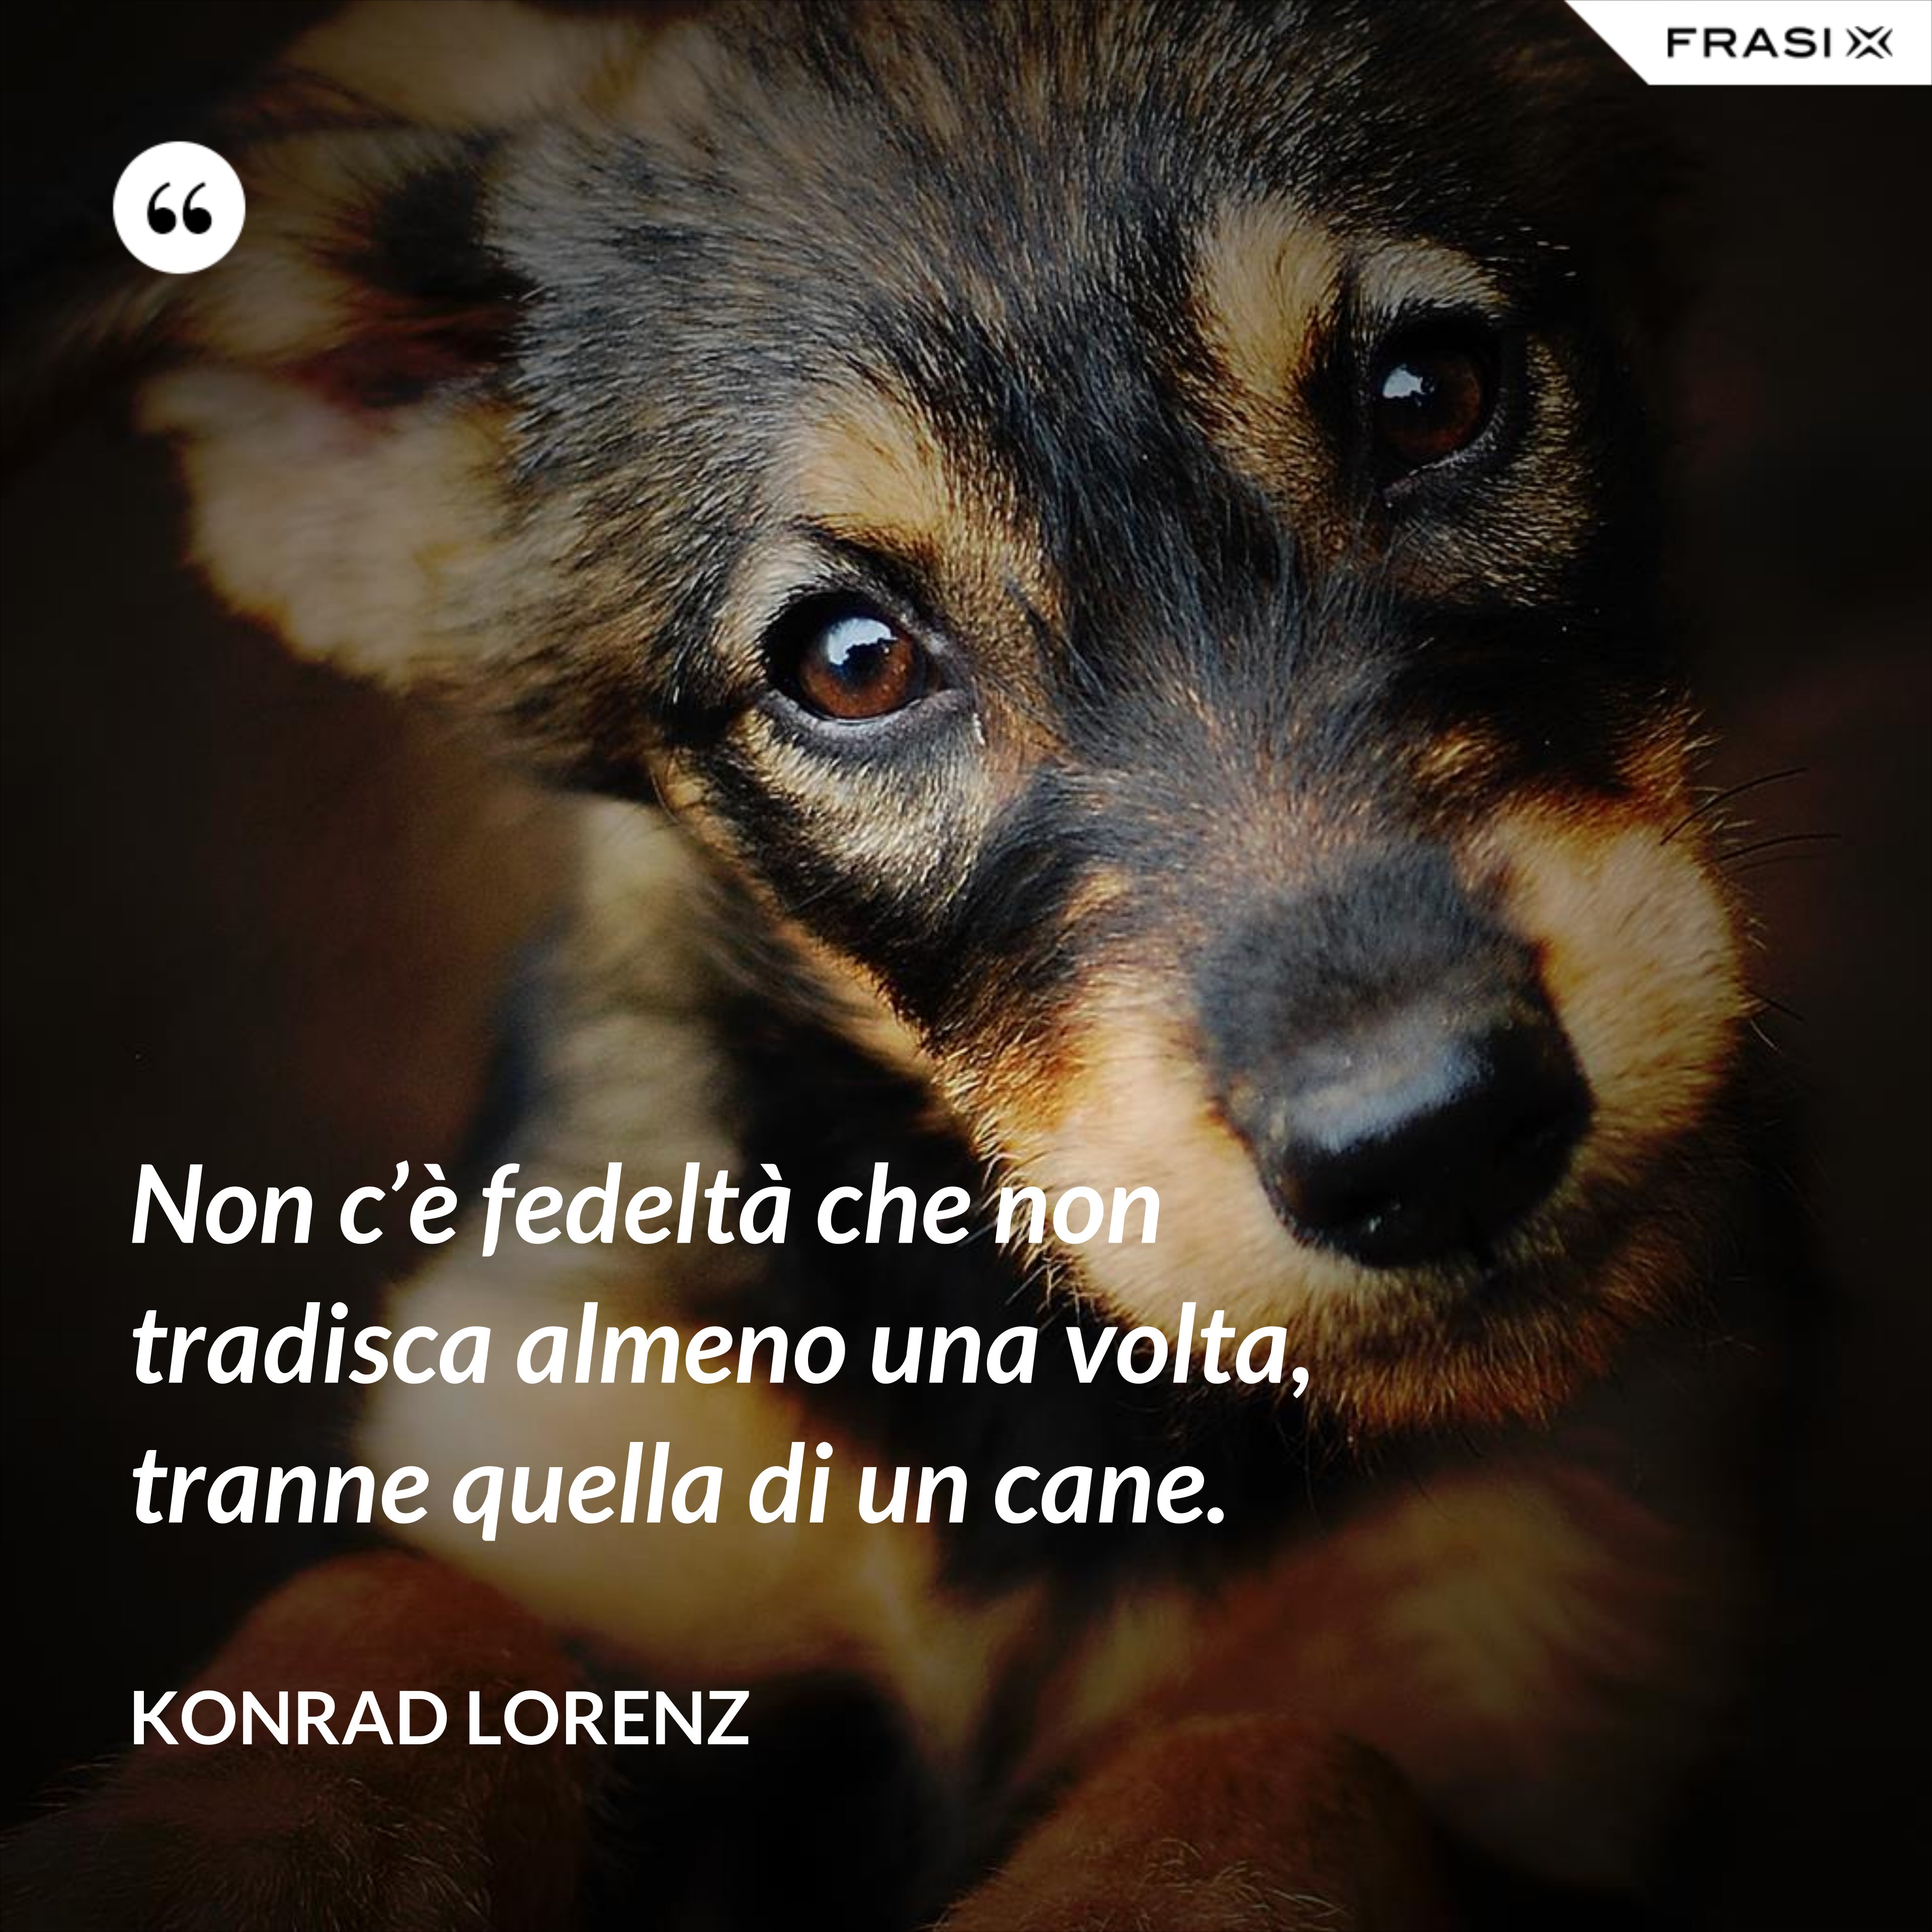 Non c’è fedeltà che non tradisca almeno una volta, tranne quella di un cane. - Konrad Lorenz